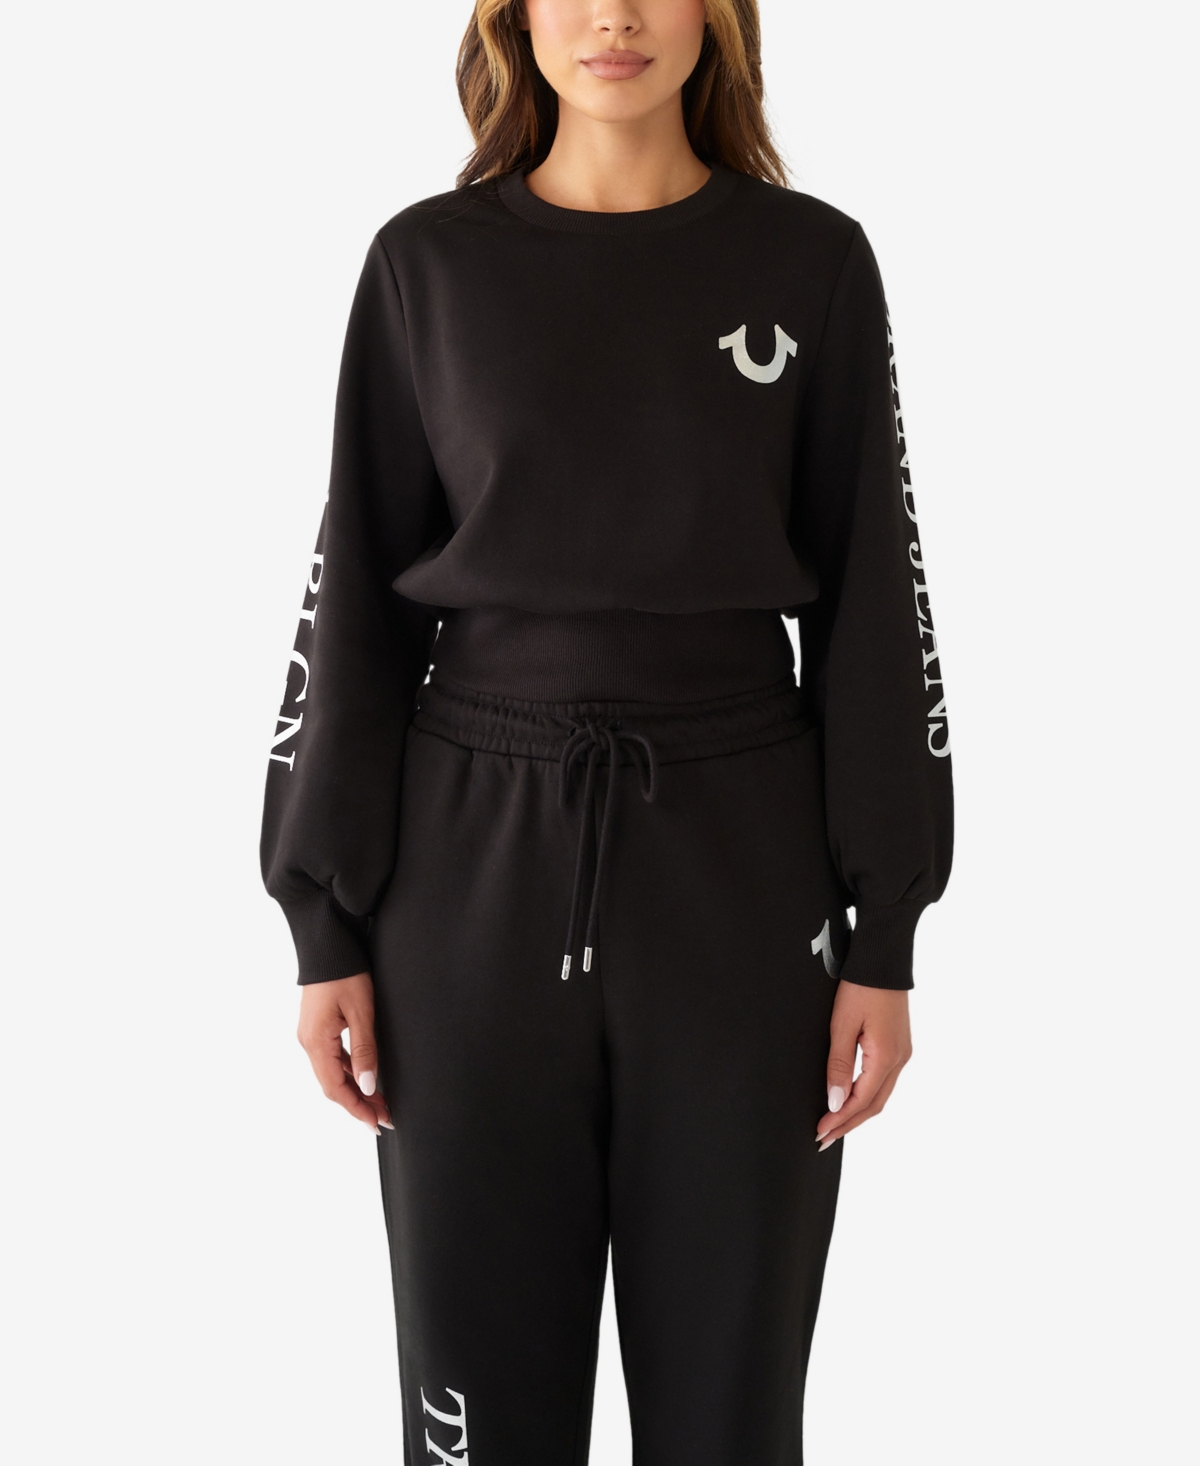 True Religion Women's Fashion Popover Long Sleeve Sweatshirt In Jet Black